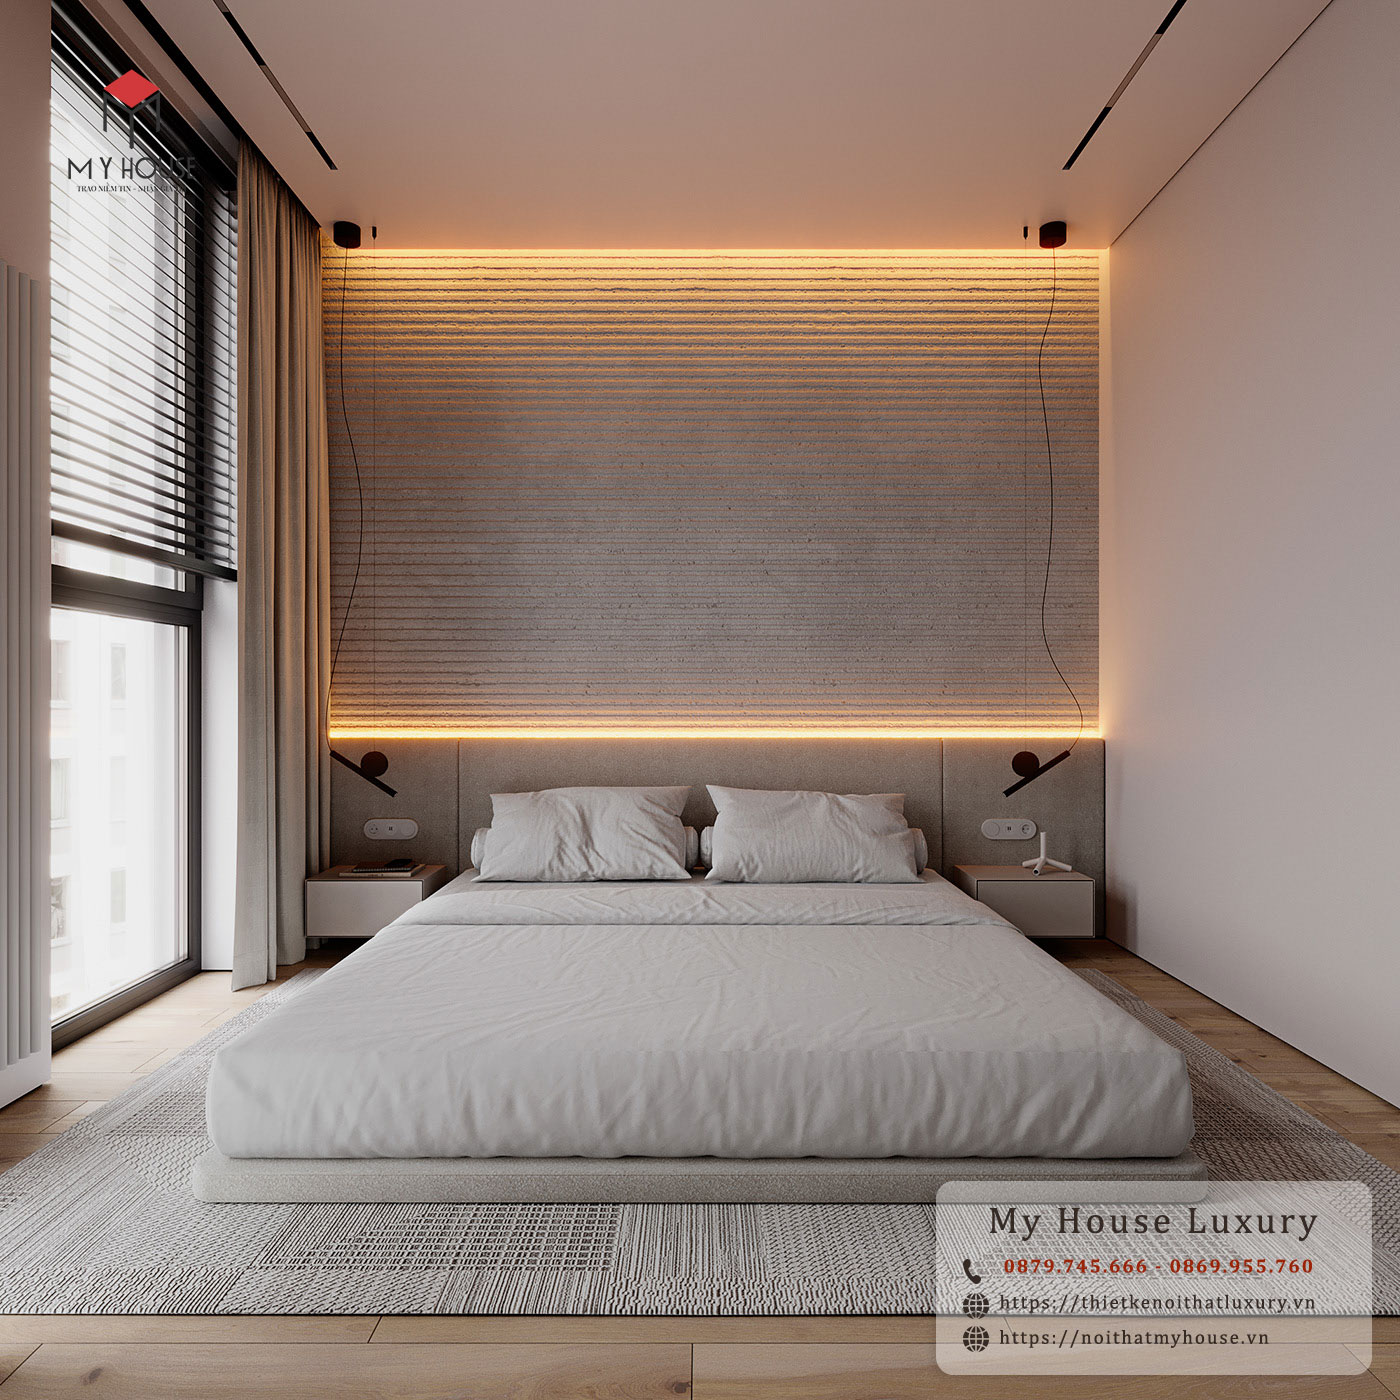 Thiết kế nội thất phòng ngủ đơn giản với tone màu trắng giúp mở rộng không gian